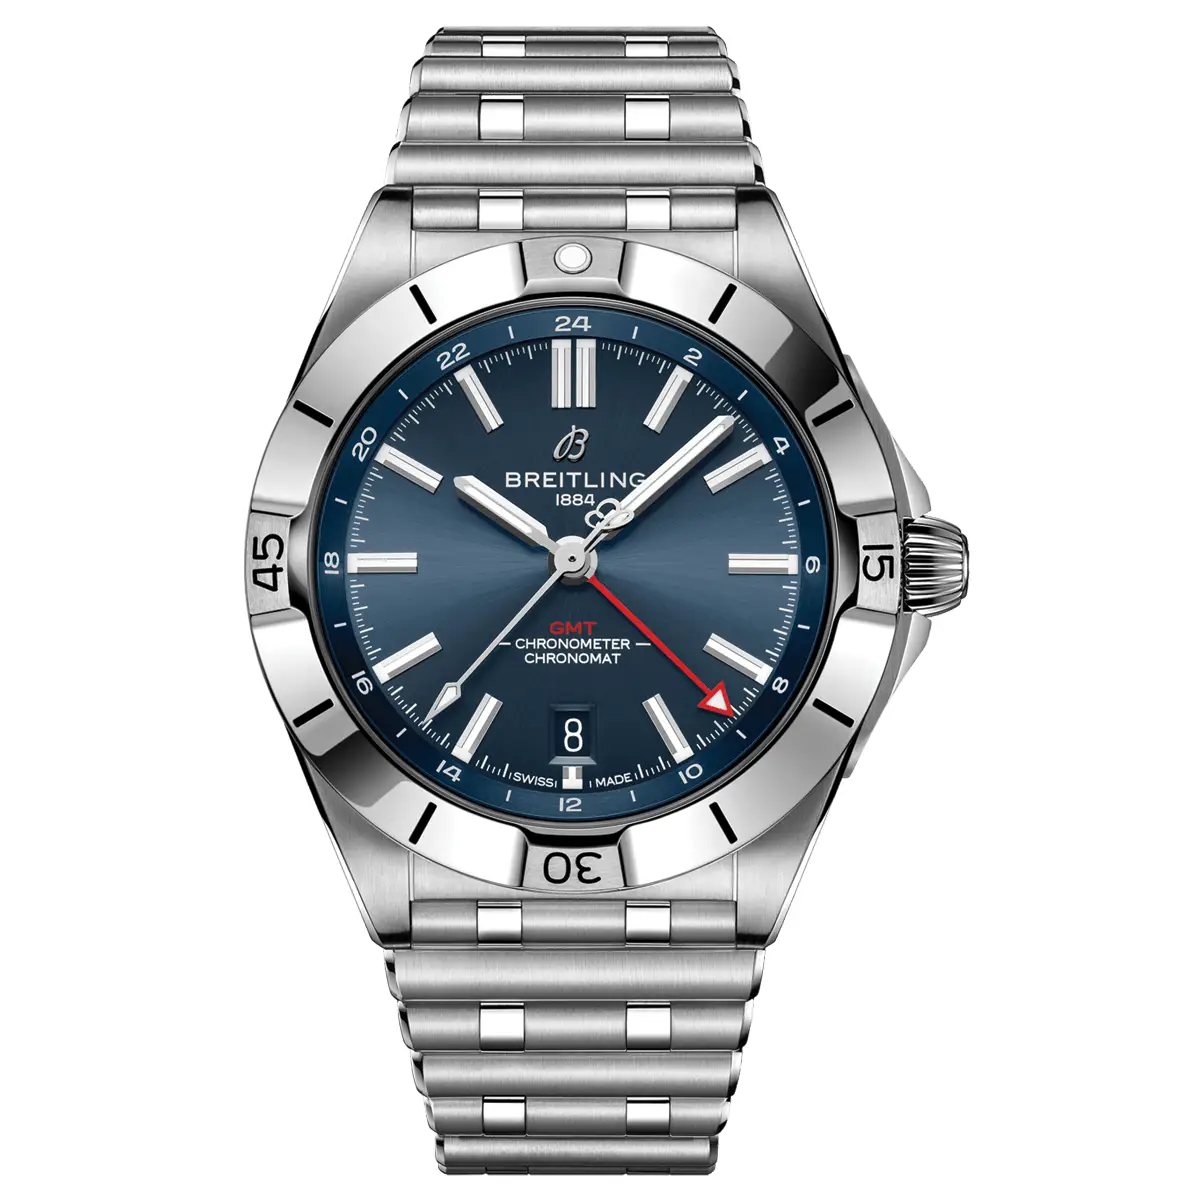 Đồng hồ Breitling Chronomat Automatic GMT 40 A32398101C1A1 mặt số màu xanh. Dây đeo bằng thép. Thân vỏ bằng thép.